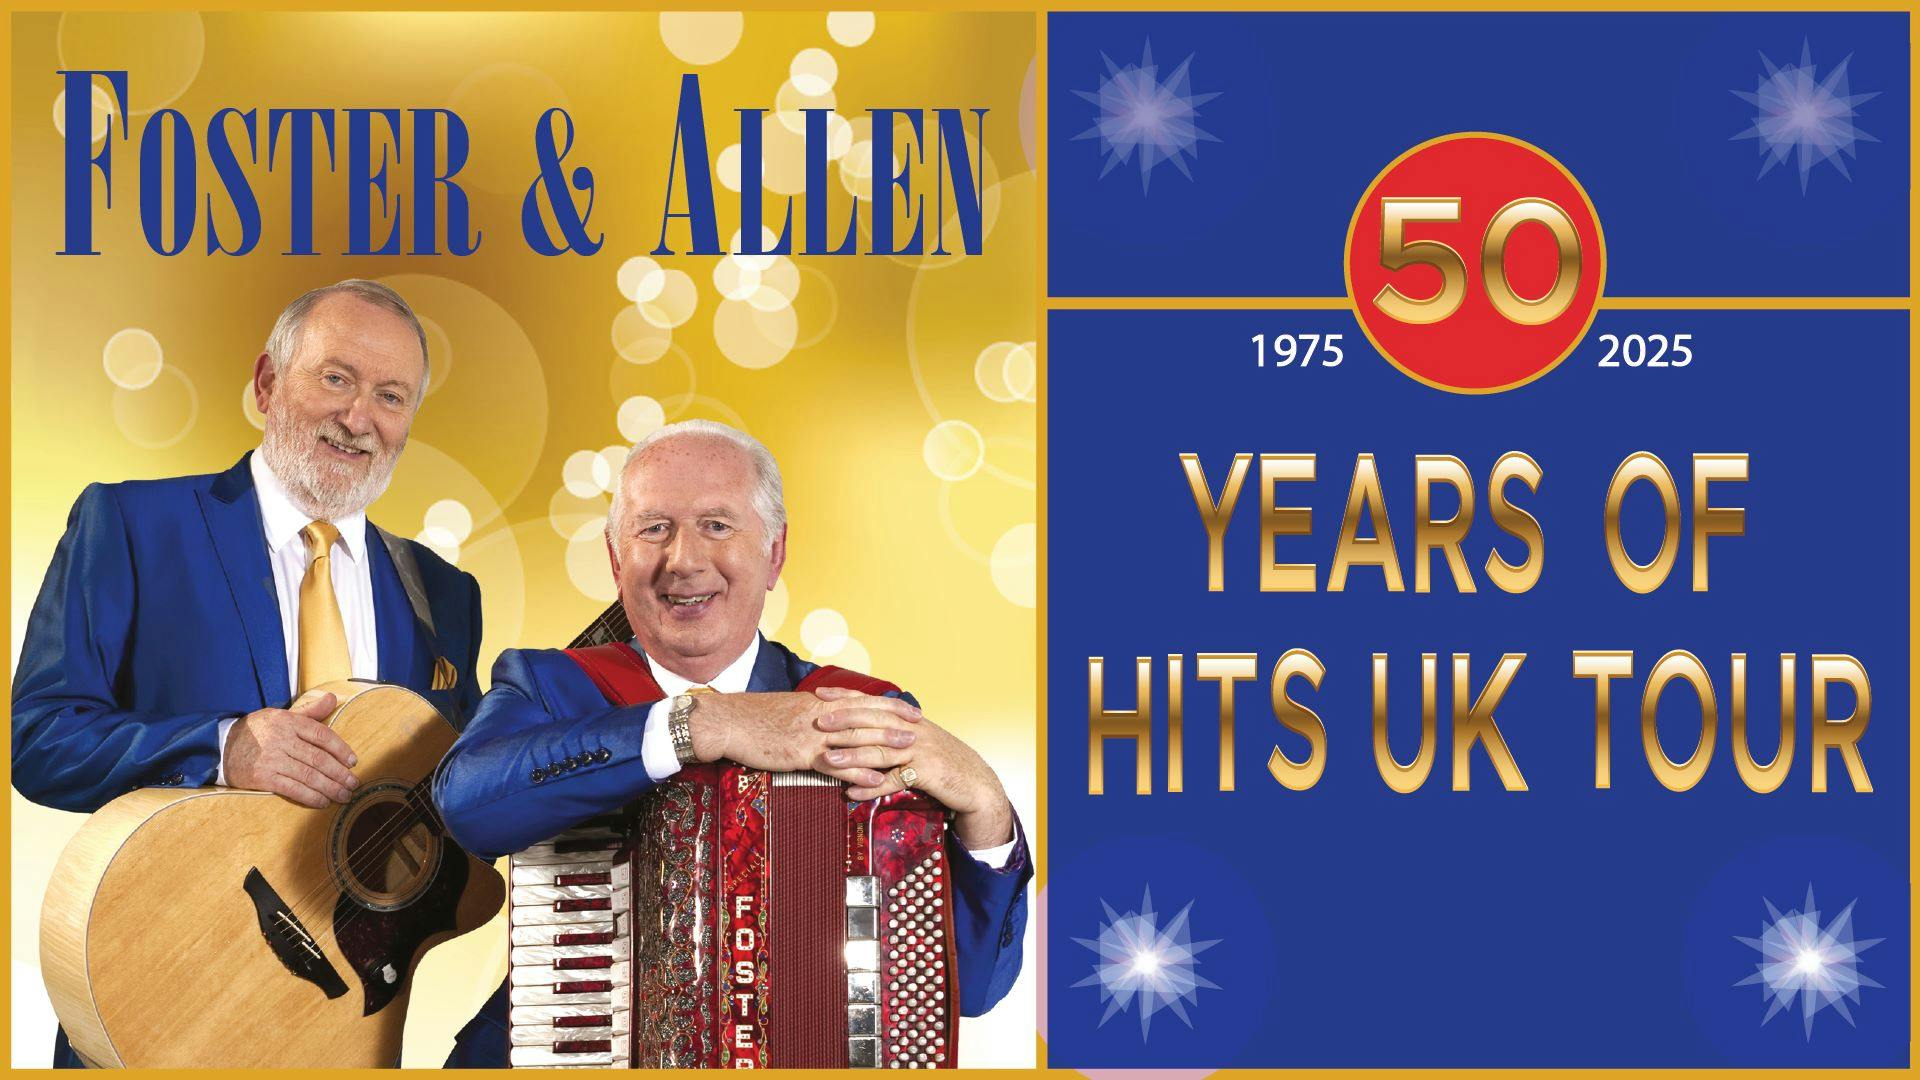 Foster & Allen - 50 Years of Hits  hero